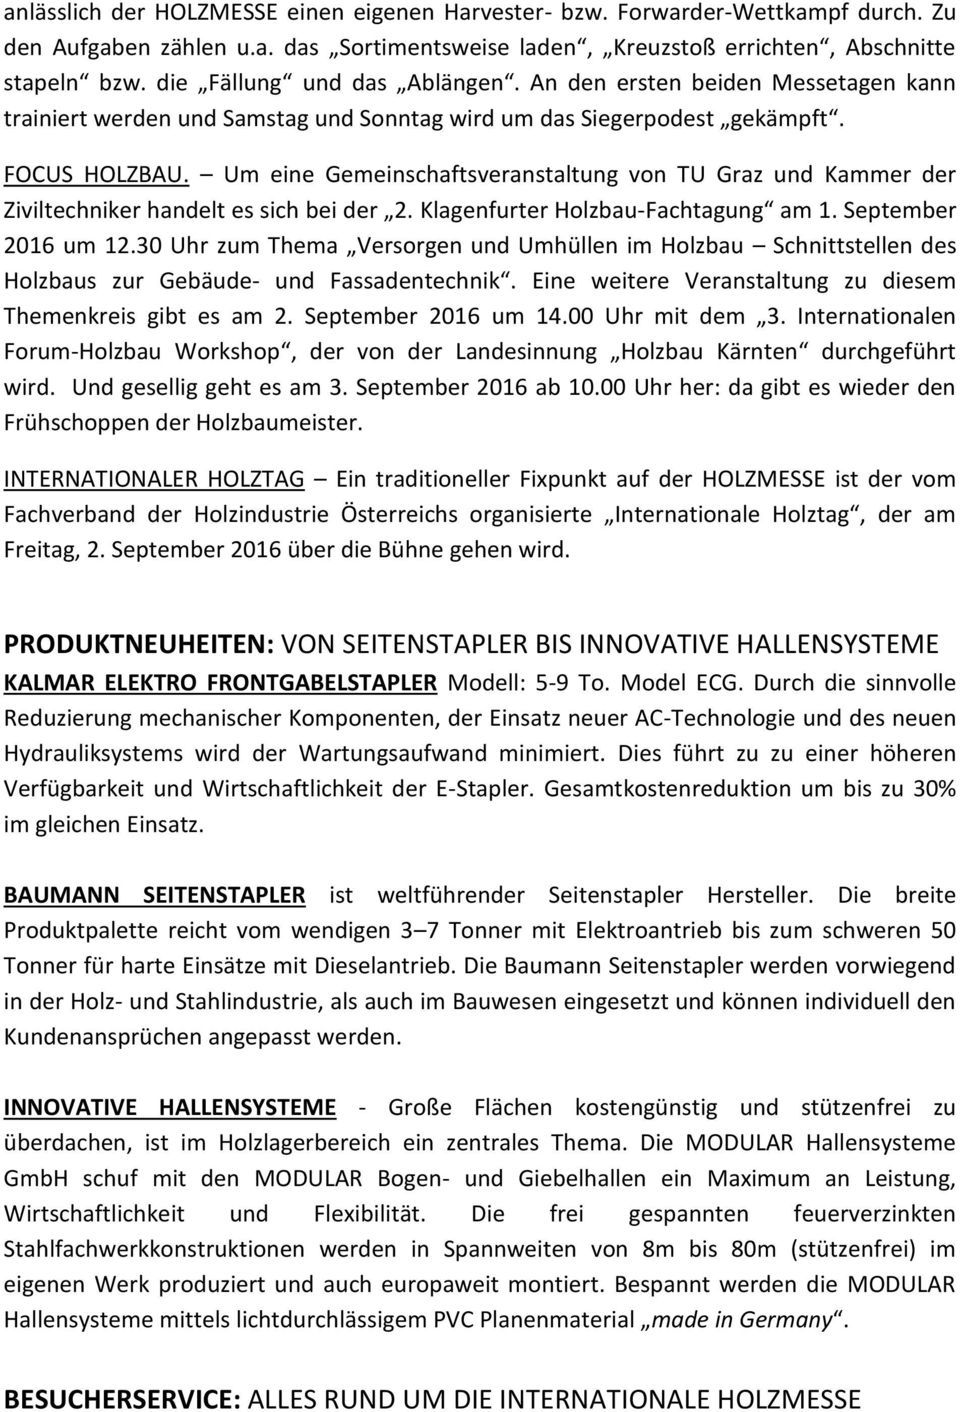 Um eine Gemeinschaftsveranstaltung von TU Graz und Kammer der Ziviltechniker handelt es sich bei der 2. Klagenfurter Holzbau-Fachtagung am 1. September 2016 um 12.